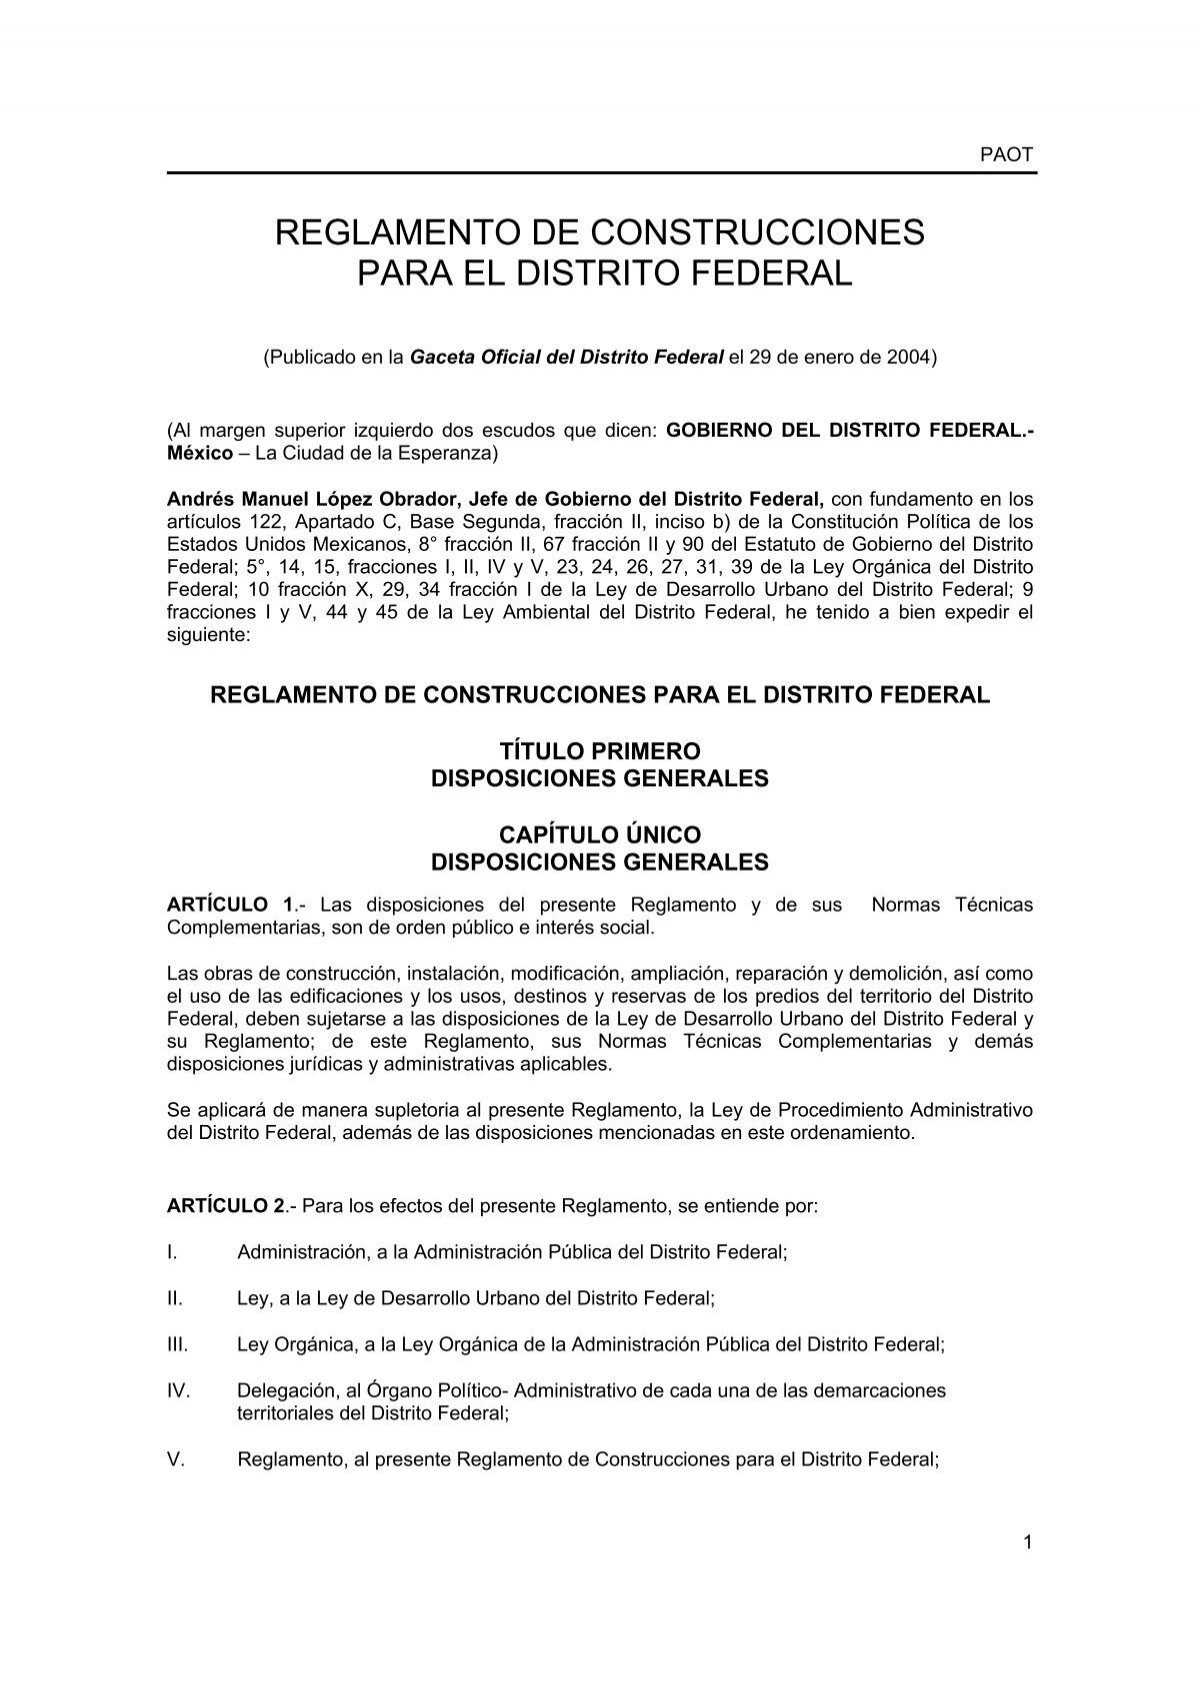 La alcaldía Cuauhtémoc aplicará la normatividad vigente para